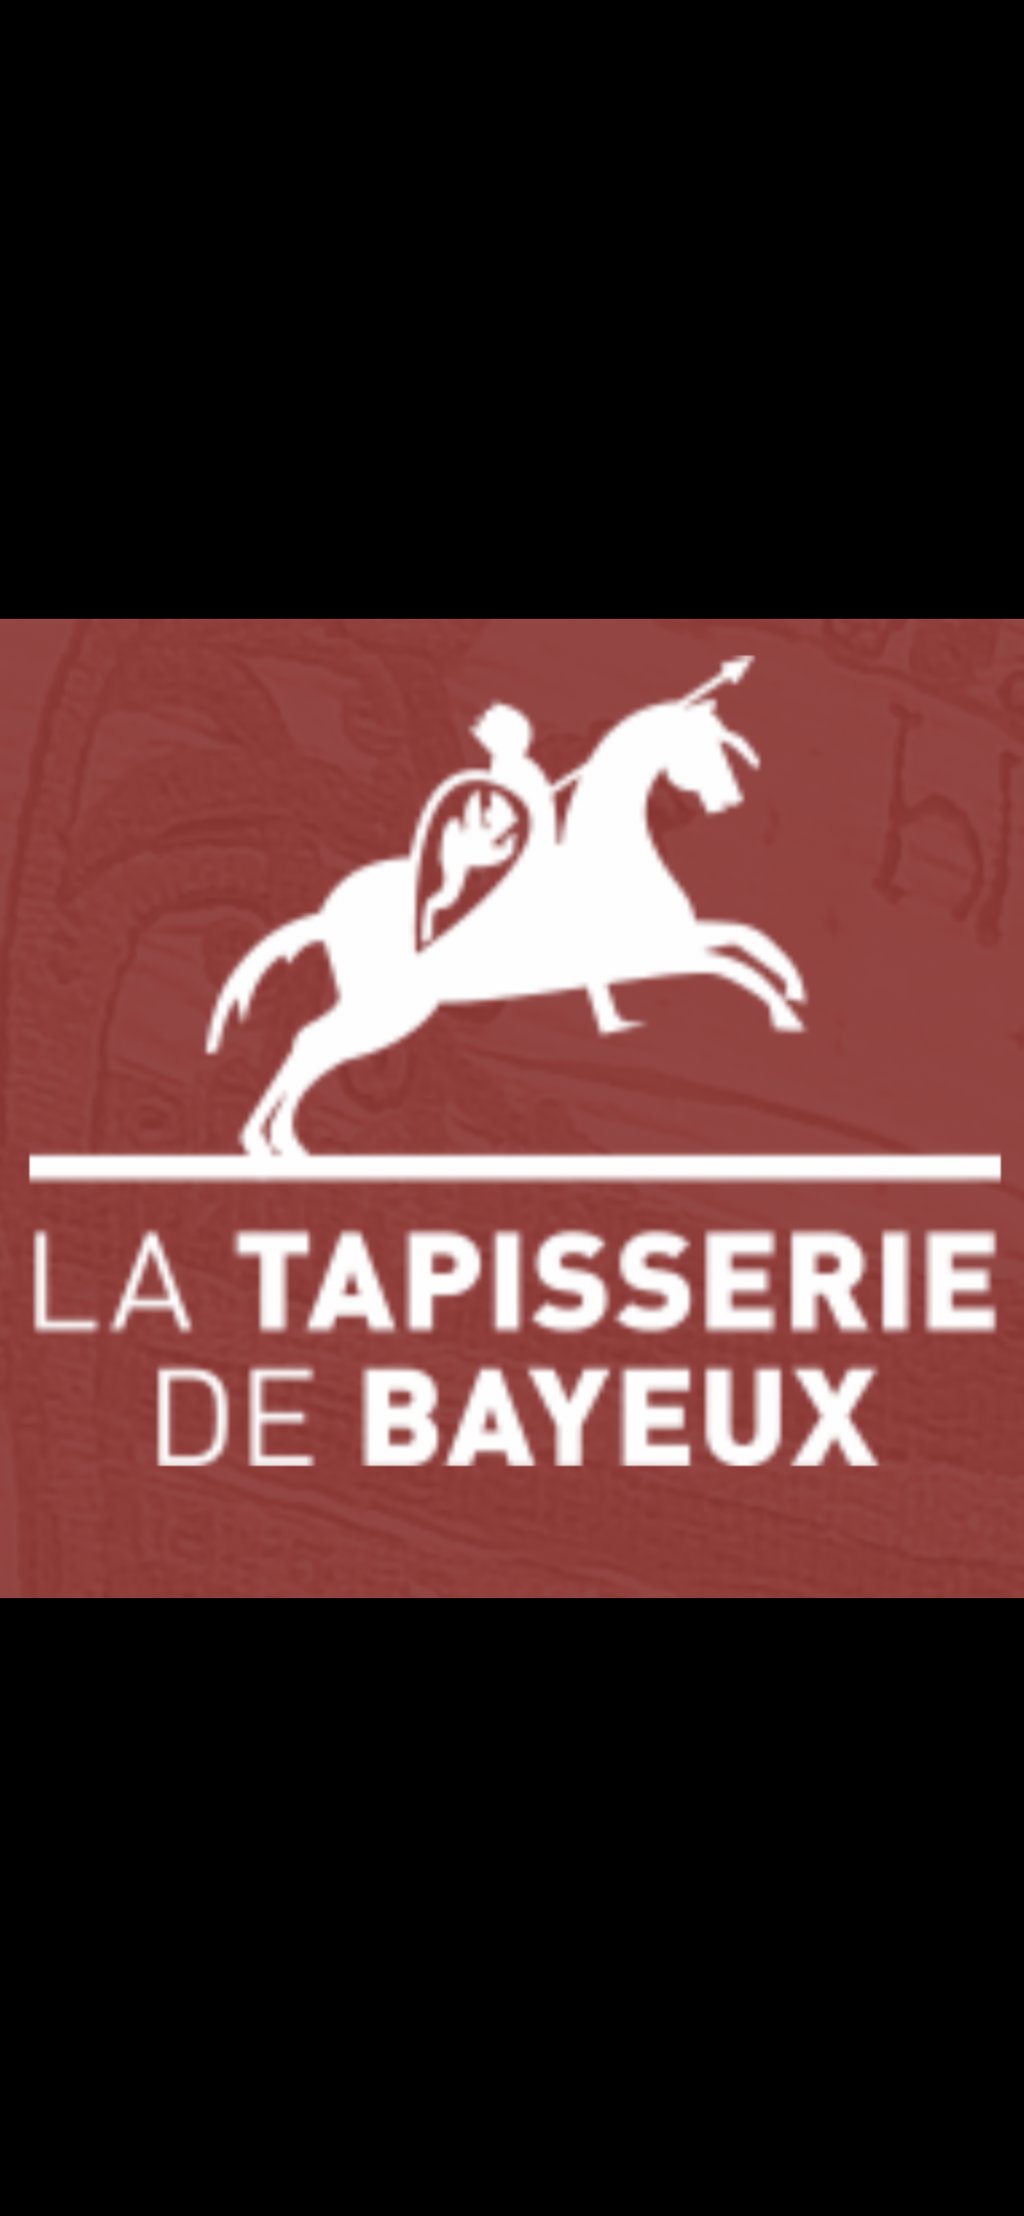 Verloren juten boodschappentas uit Bayeux